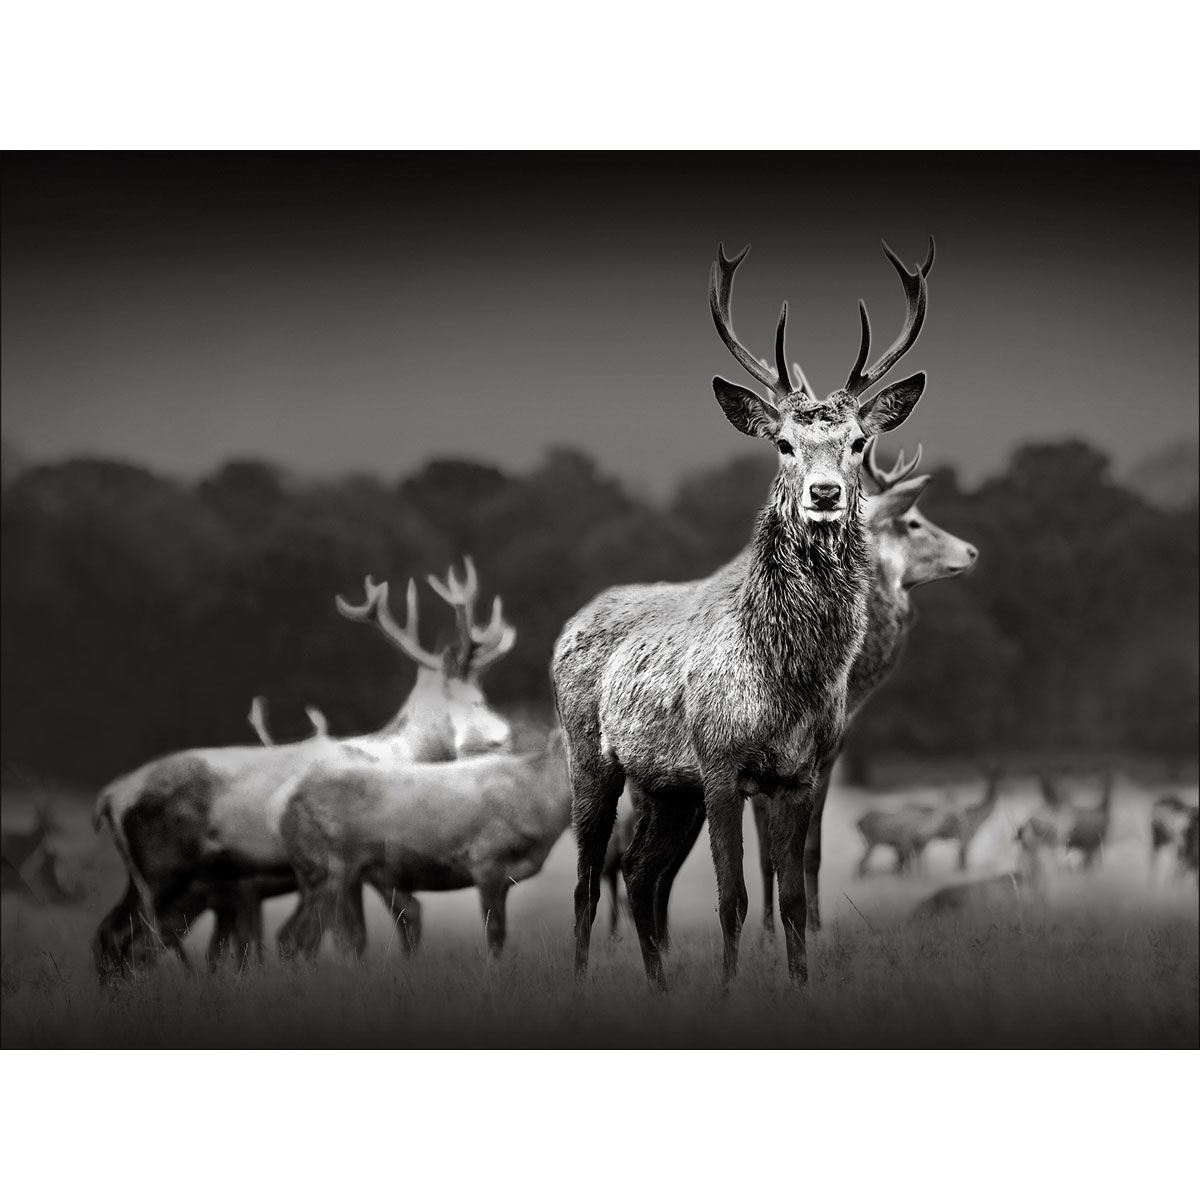 Canvas-Art, Herd Of Deer 60x80 cm